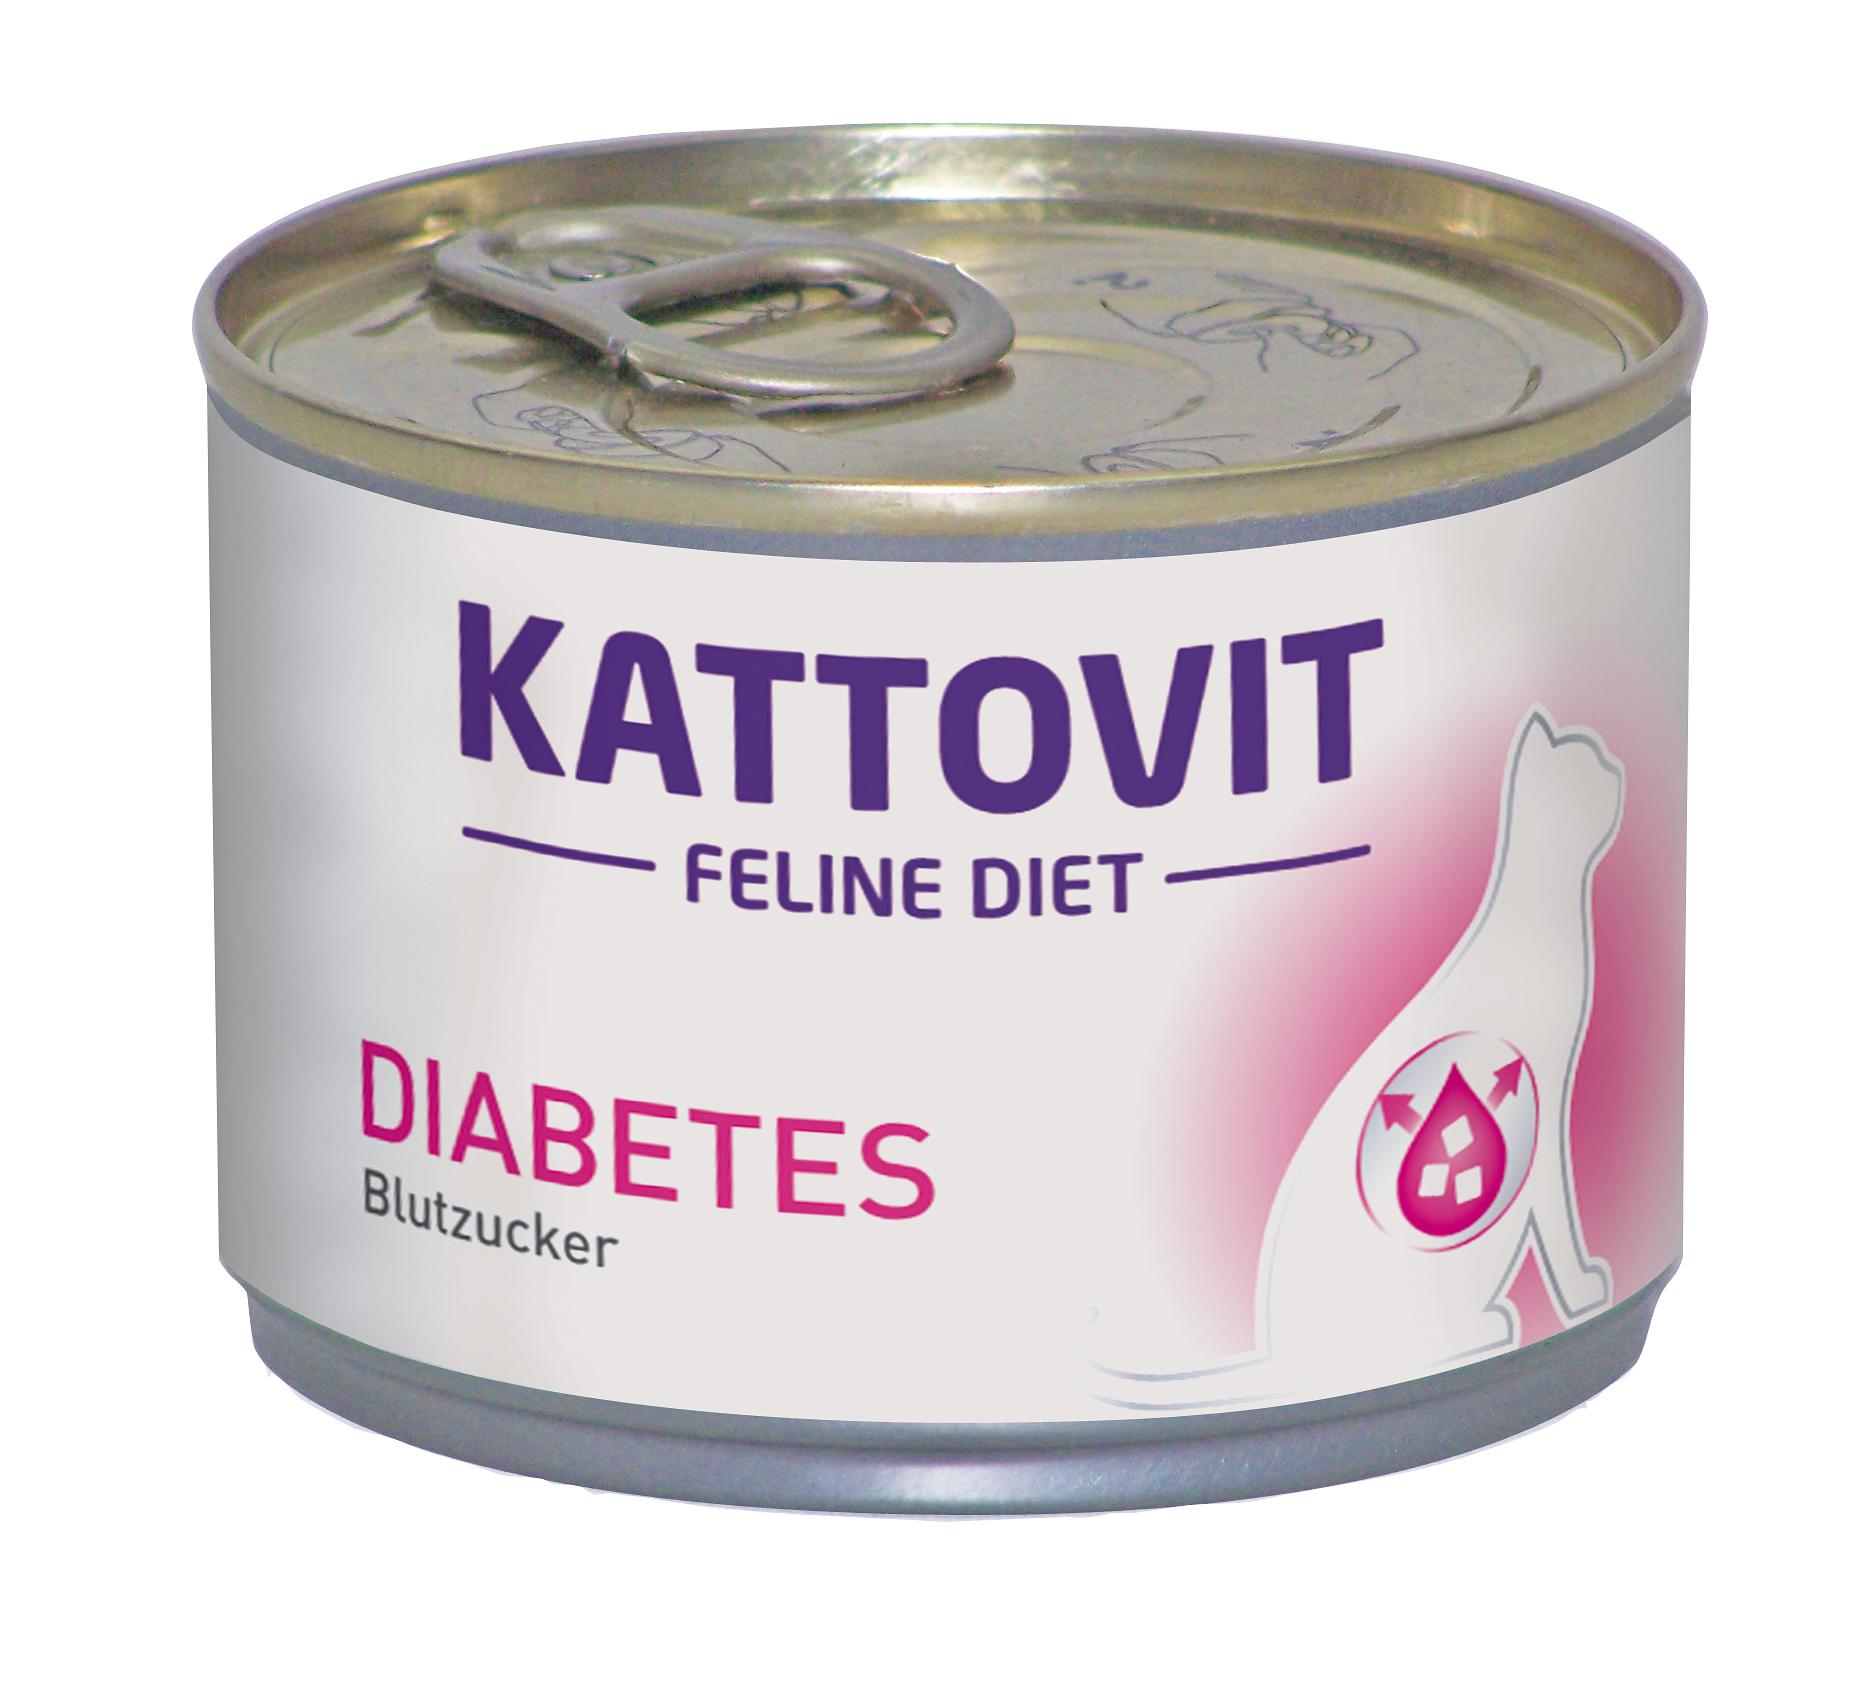 Kattovit Diabetes/Gewicht, in der Dose